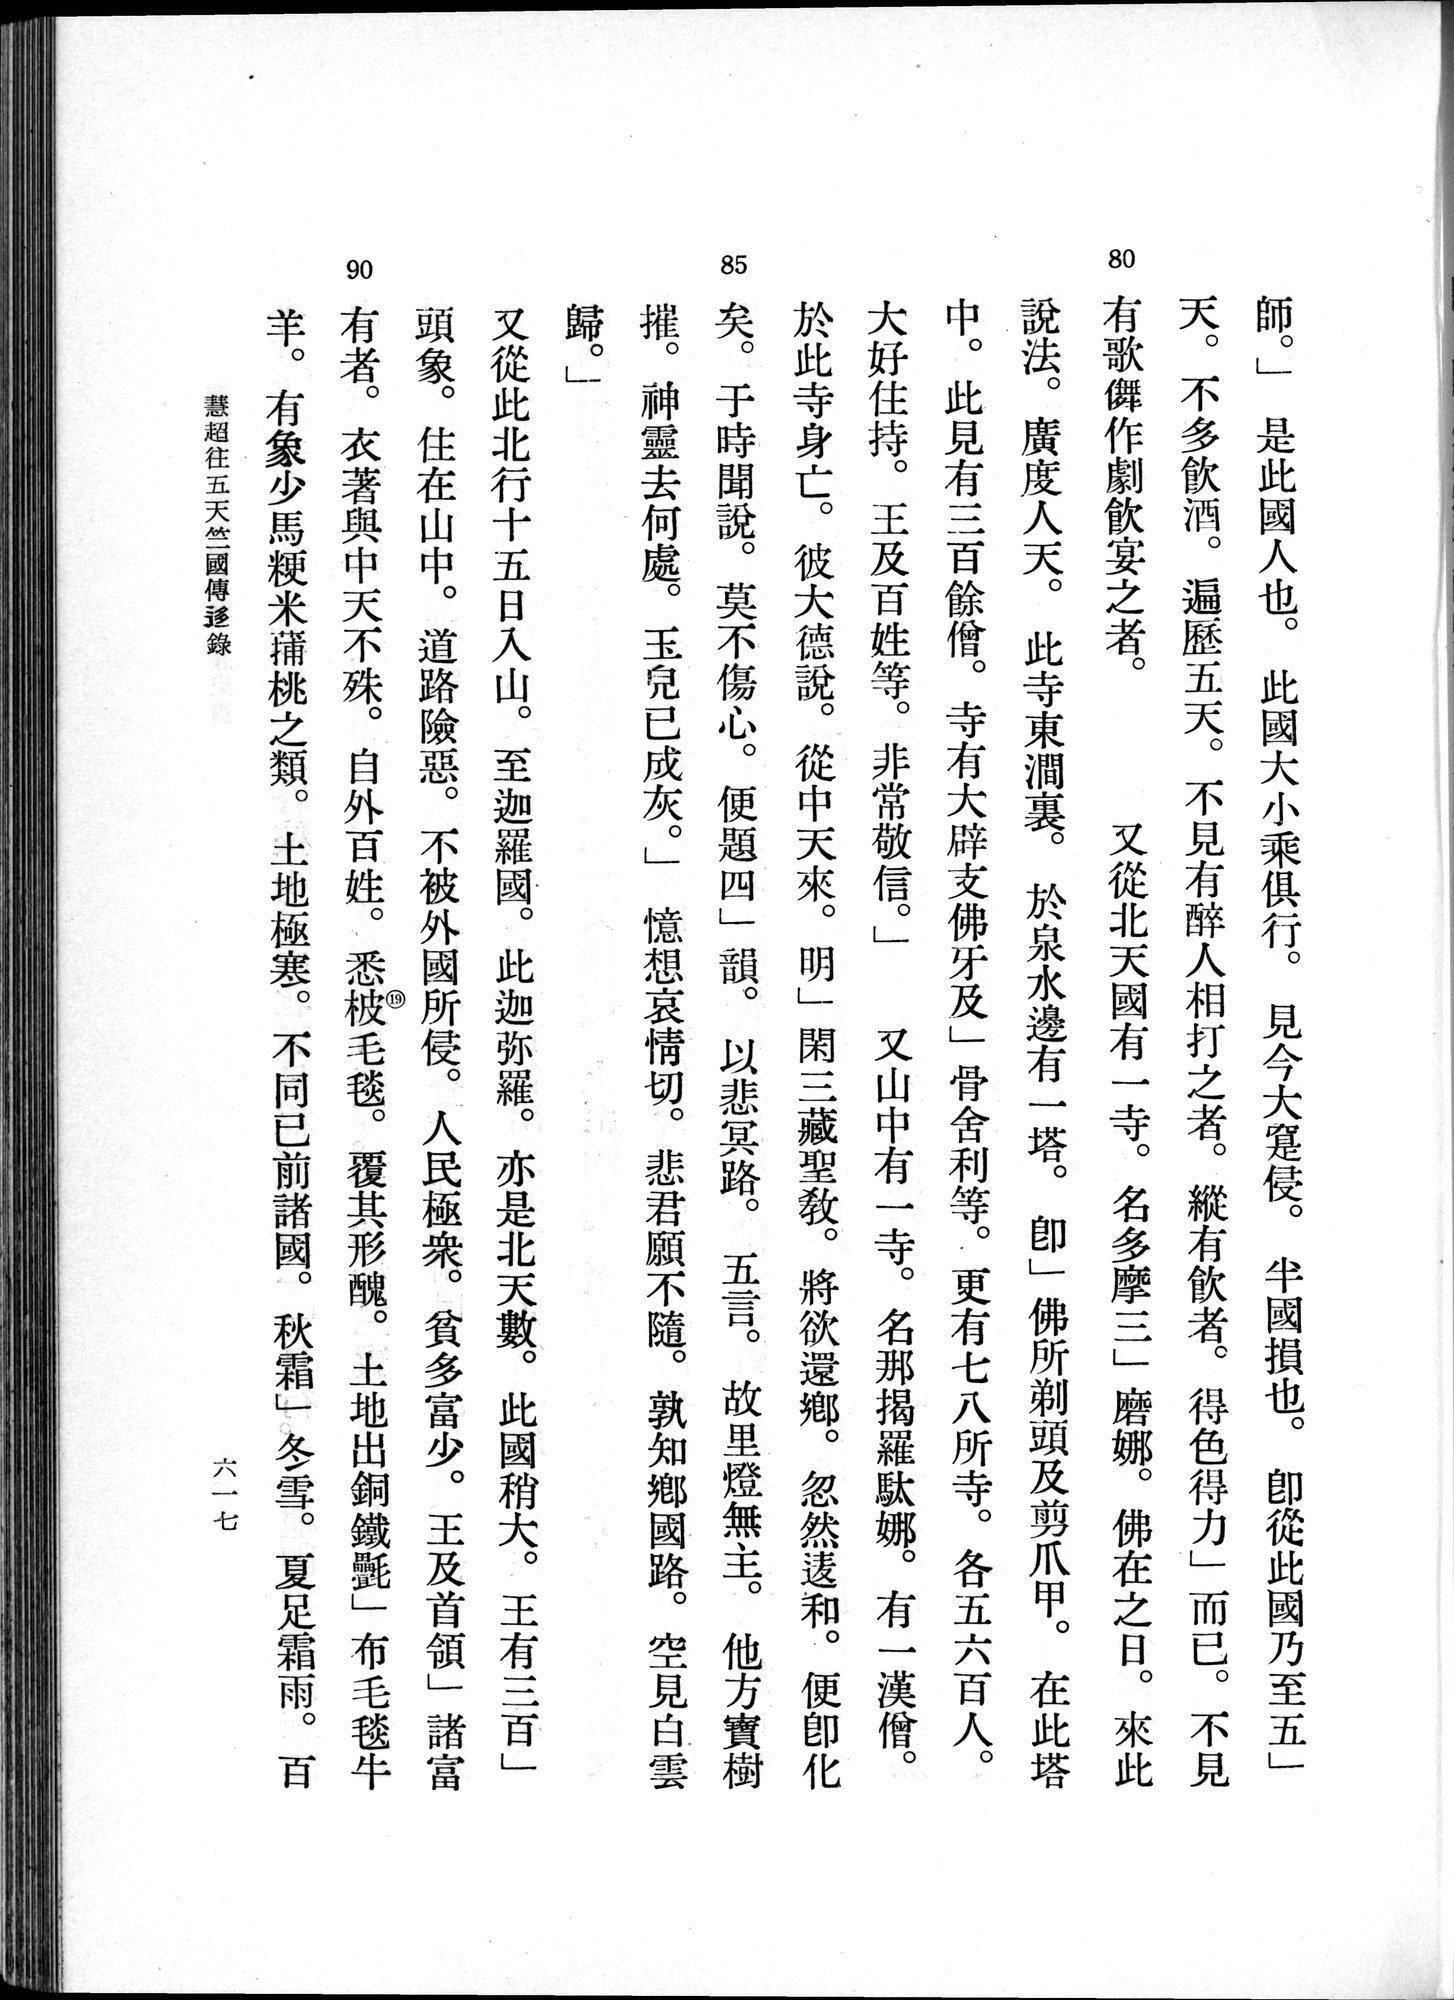 羽田博士史学論文集 : vol.1 / 655 ページ（白黒高解像度画像）